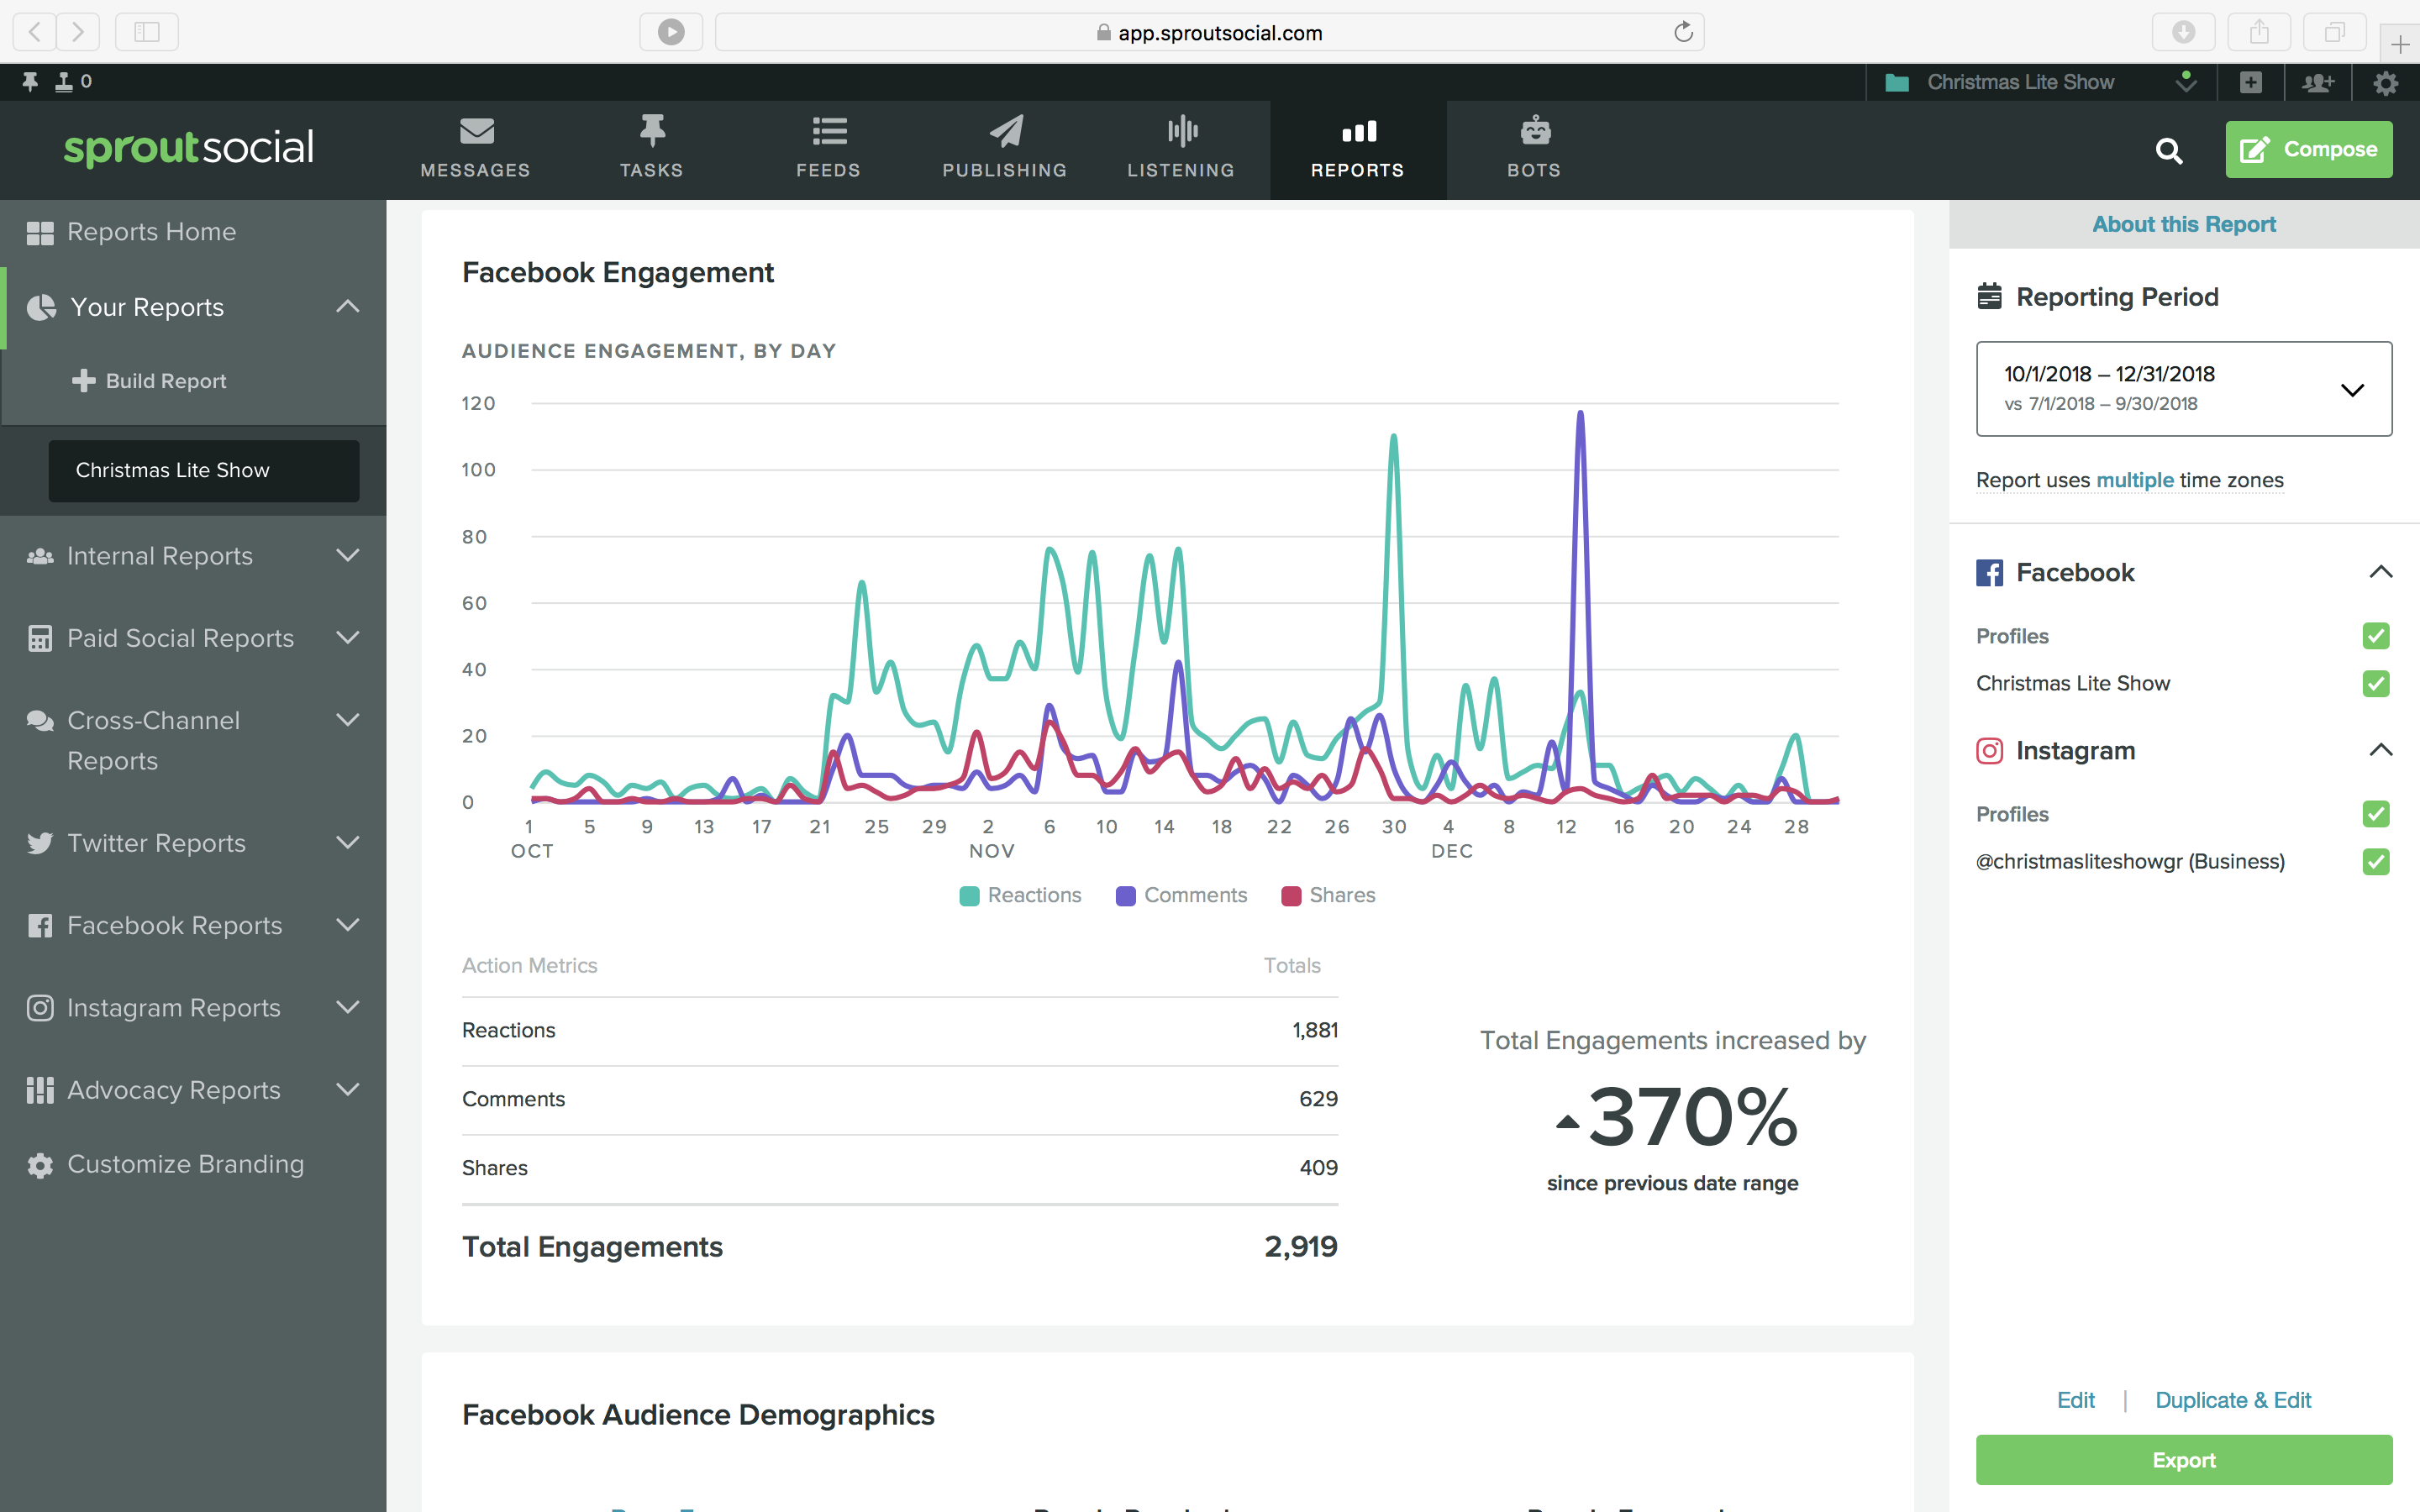 social media management tool showing social media analytics